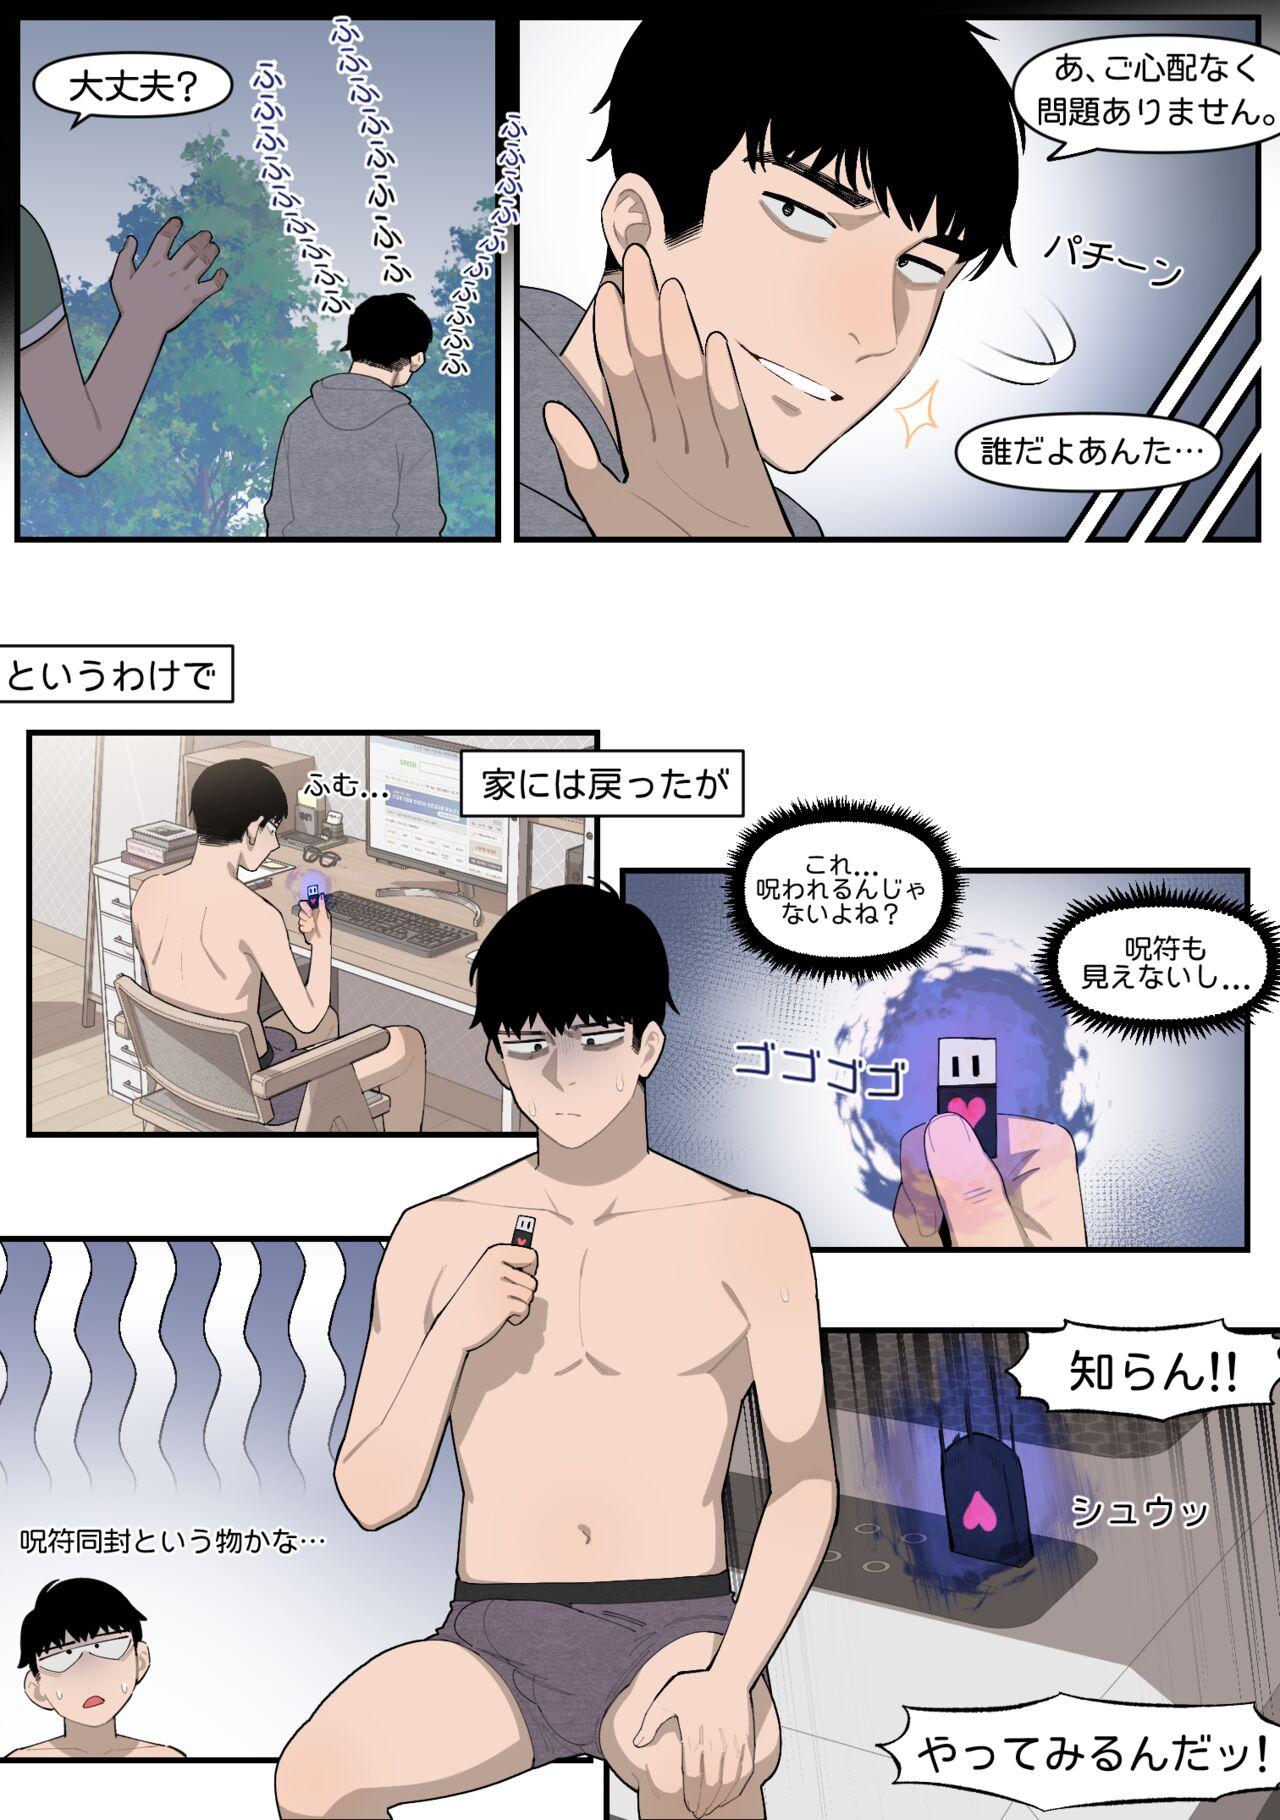 Ruiva 22.10 - Original Anime - Page 4